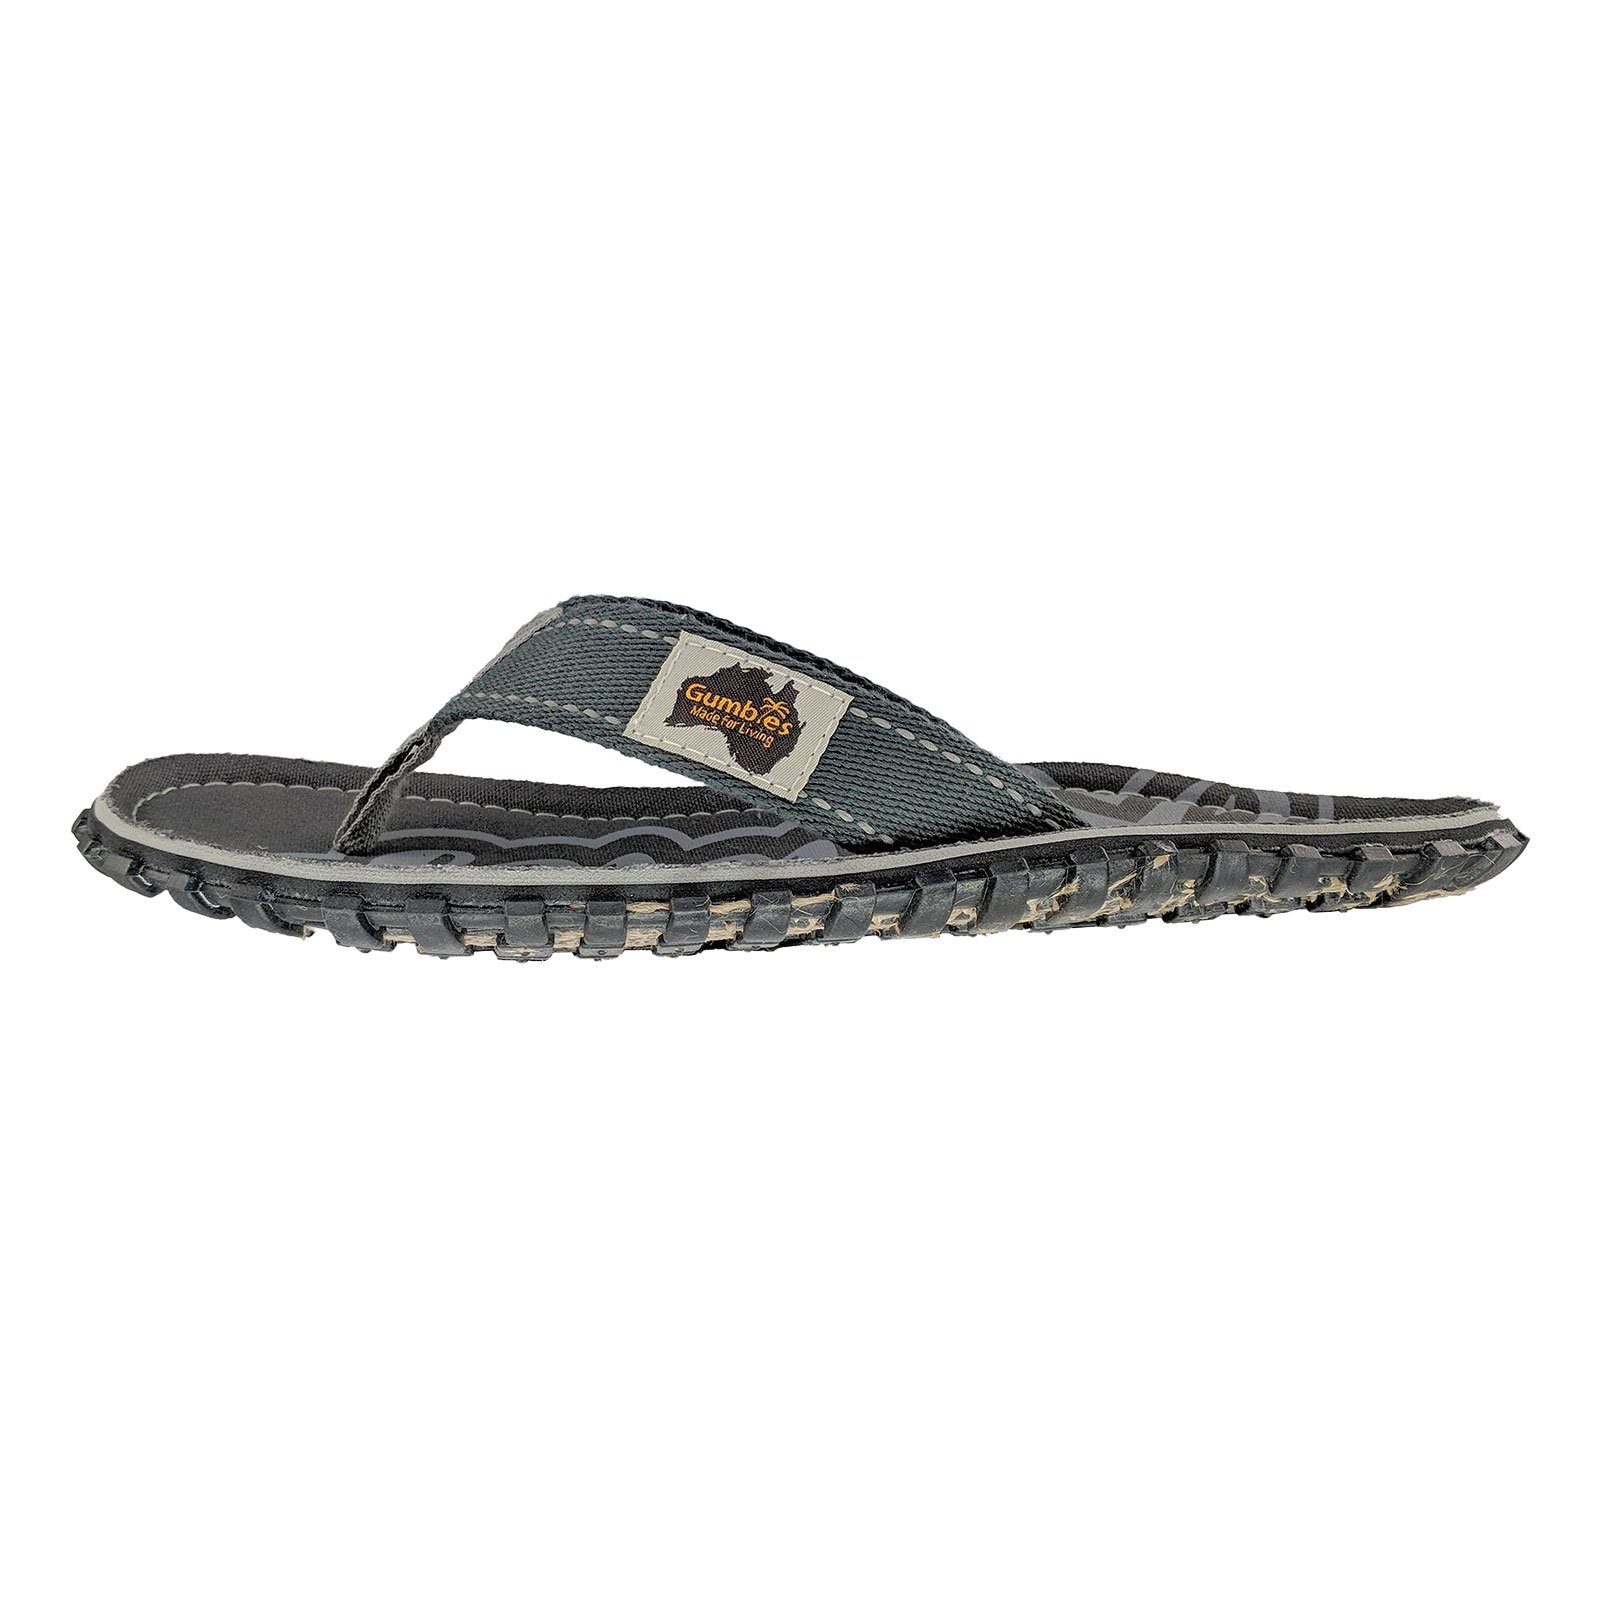 Fußbett Zehentrenner ergonomisch geformten Gumbies 2217 Islander grey mit cool